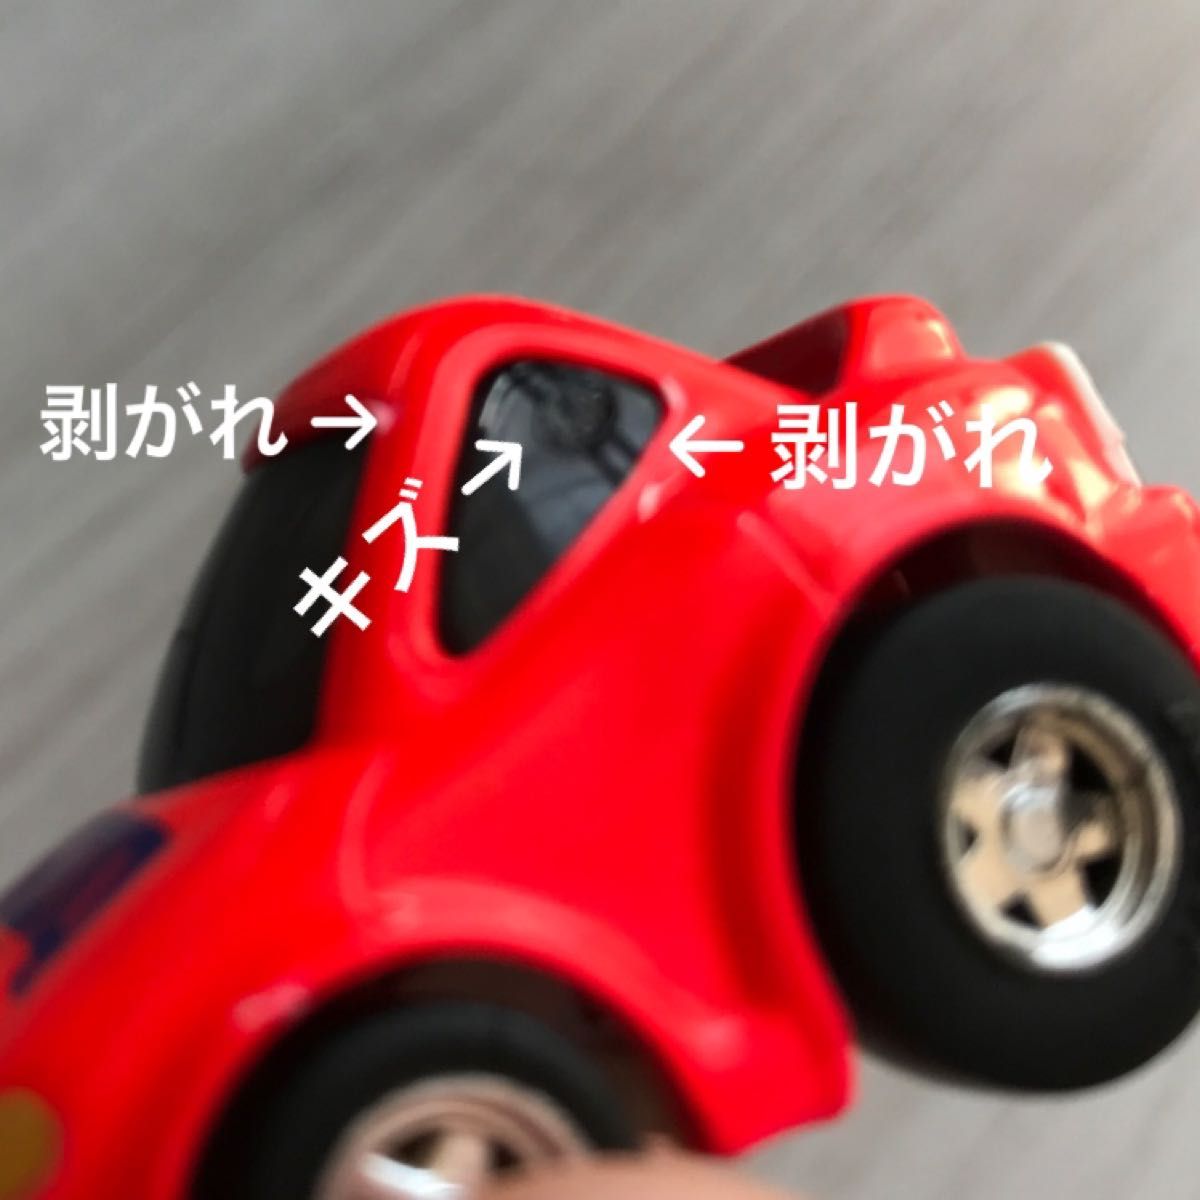 【レトロ雑貨】チョロQ HG トヨタ セリカ SS-Ⅱ スーパースポーツタカラ プルバック ミニカー 